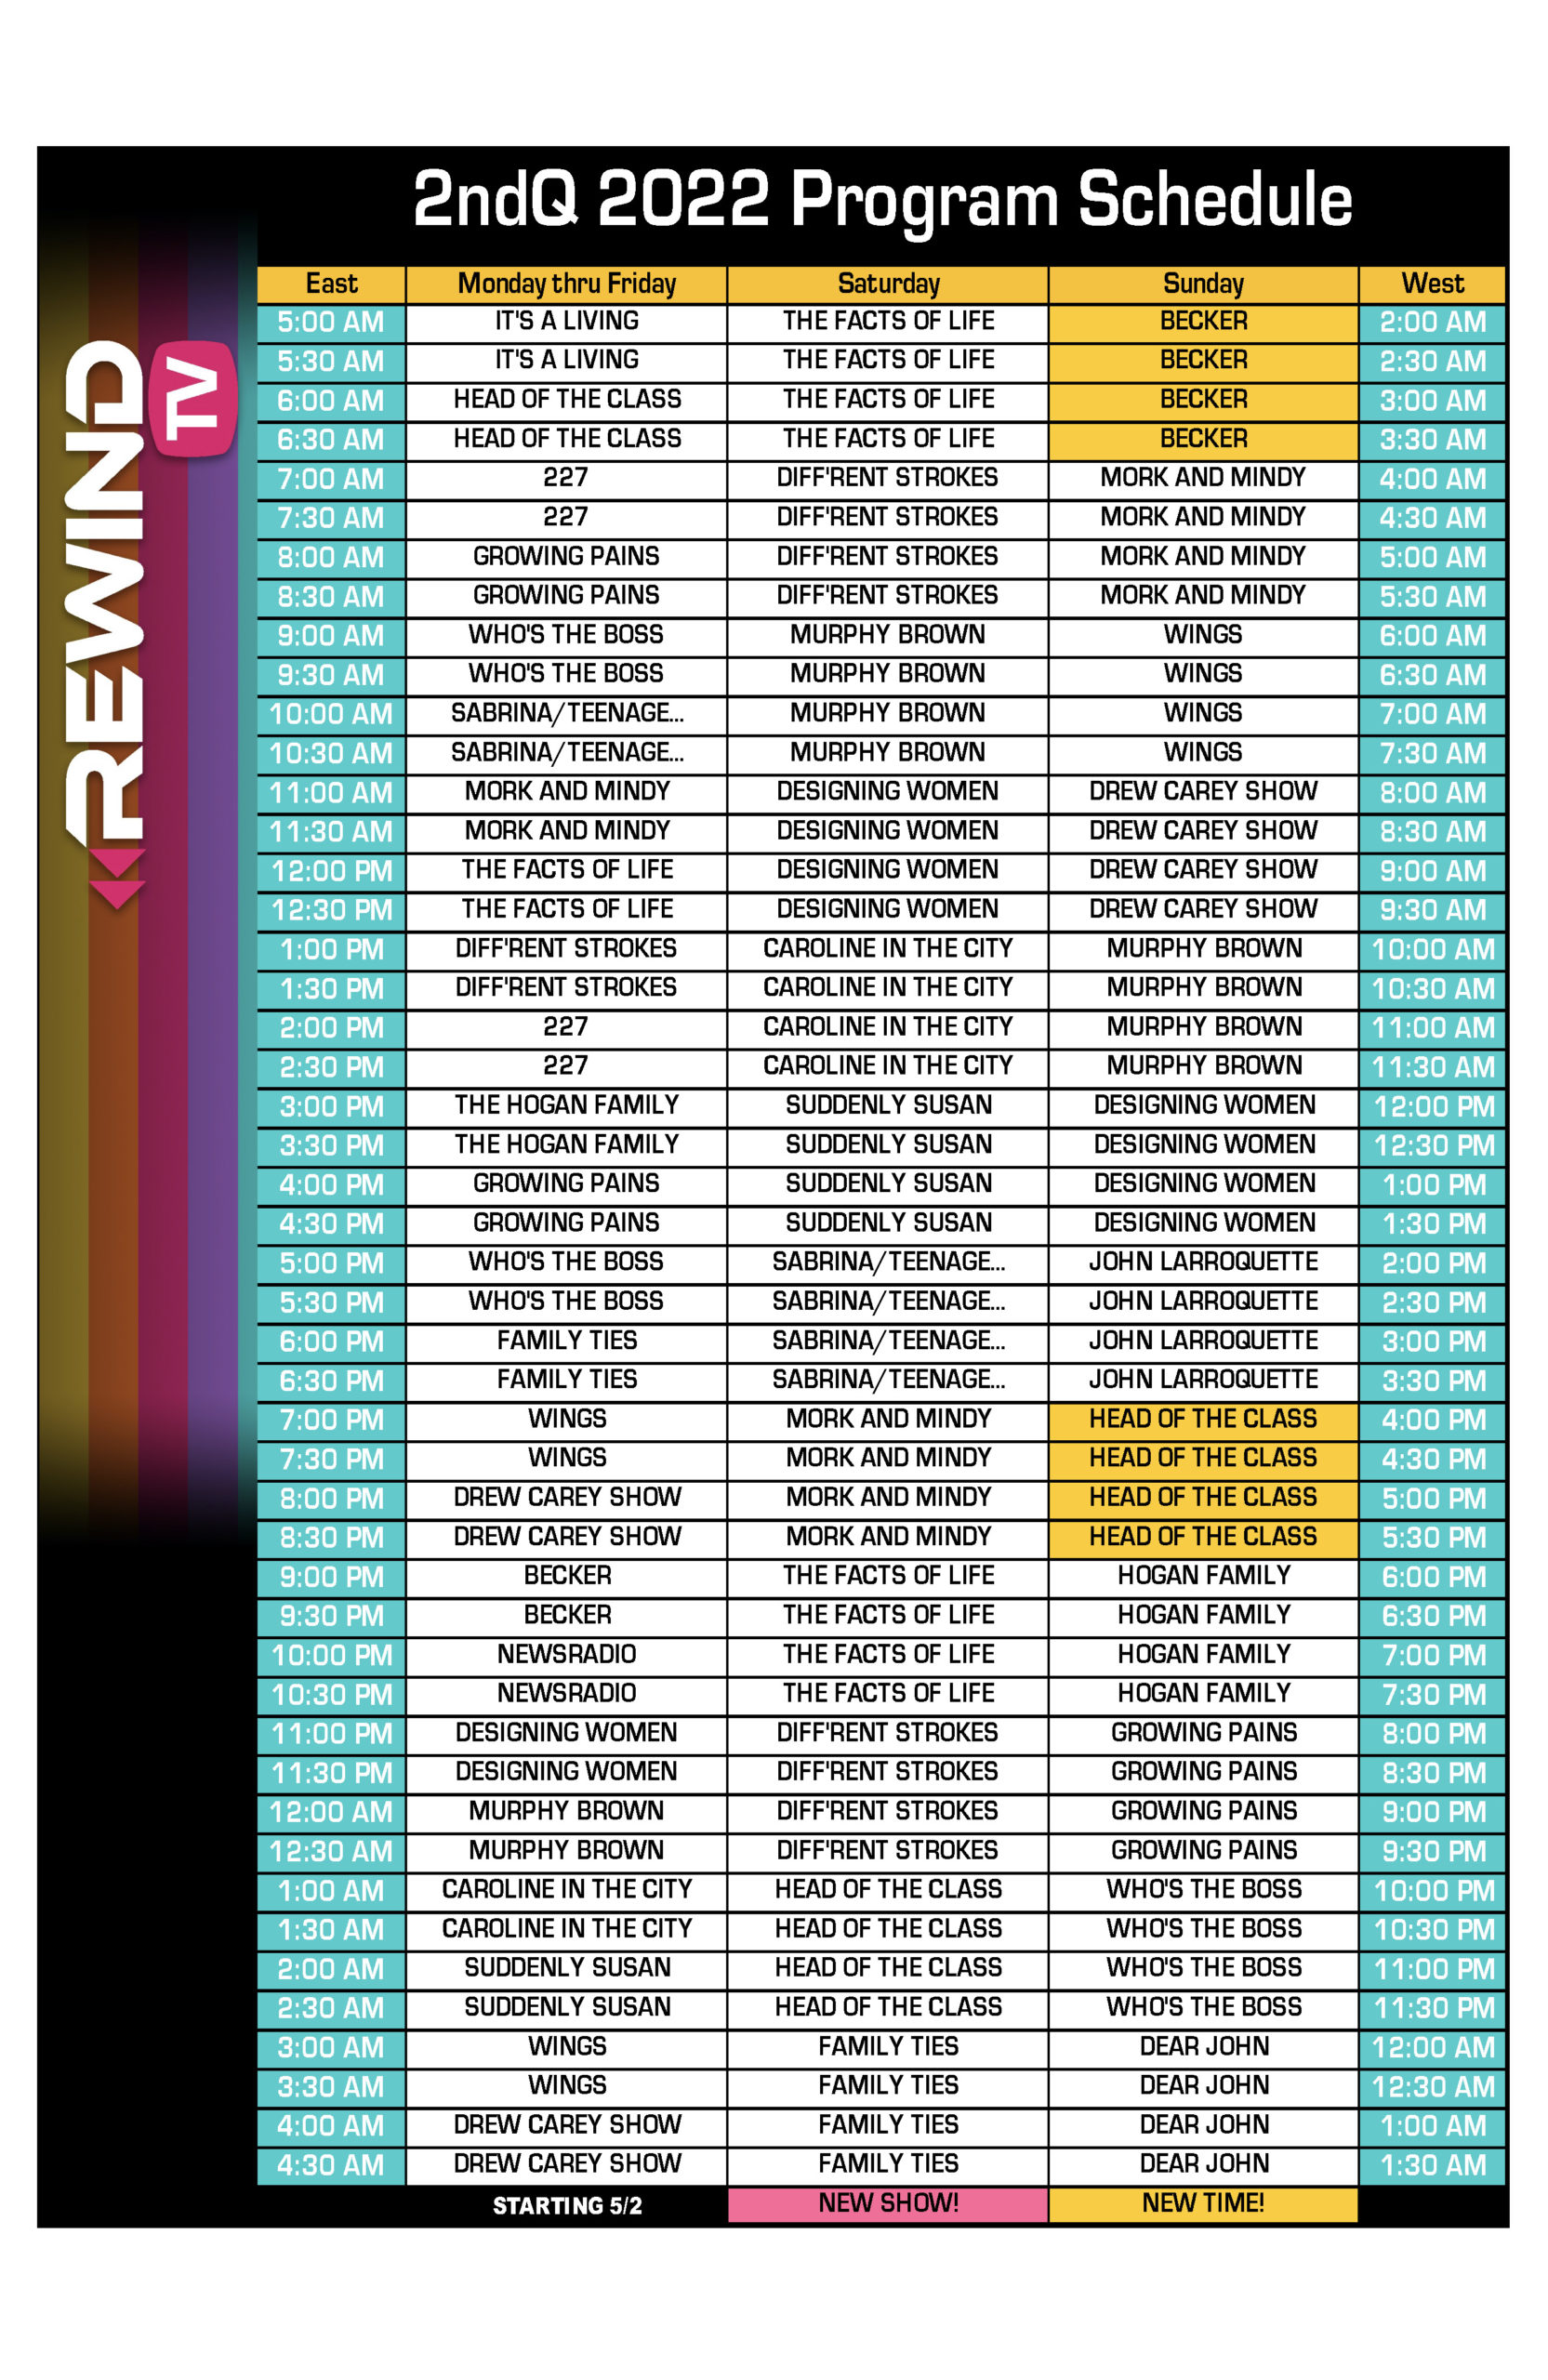 nfl rewind tv schedule